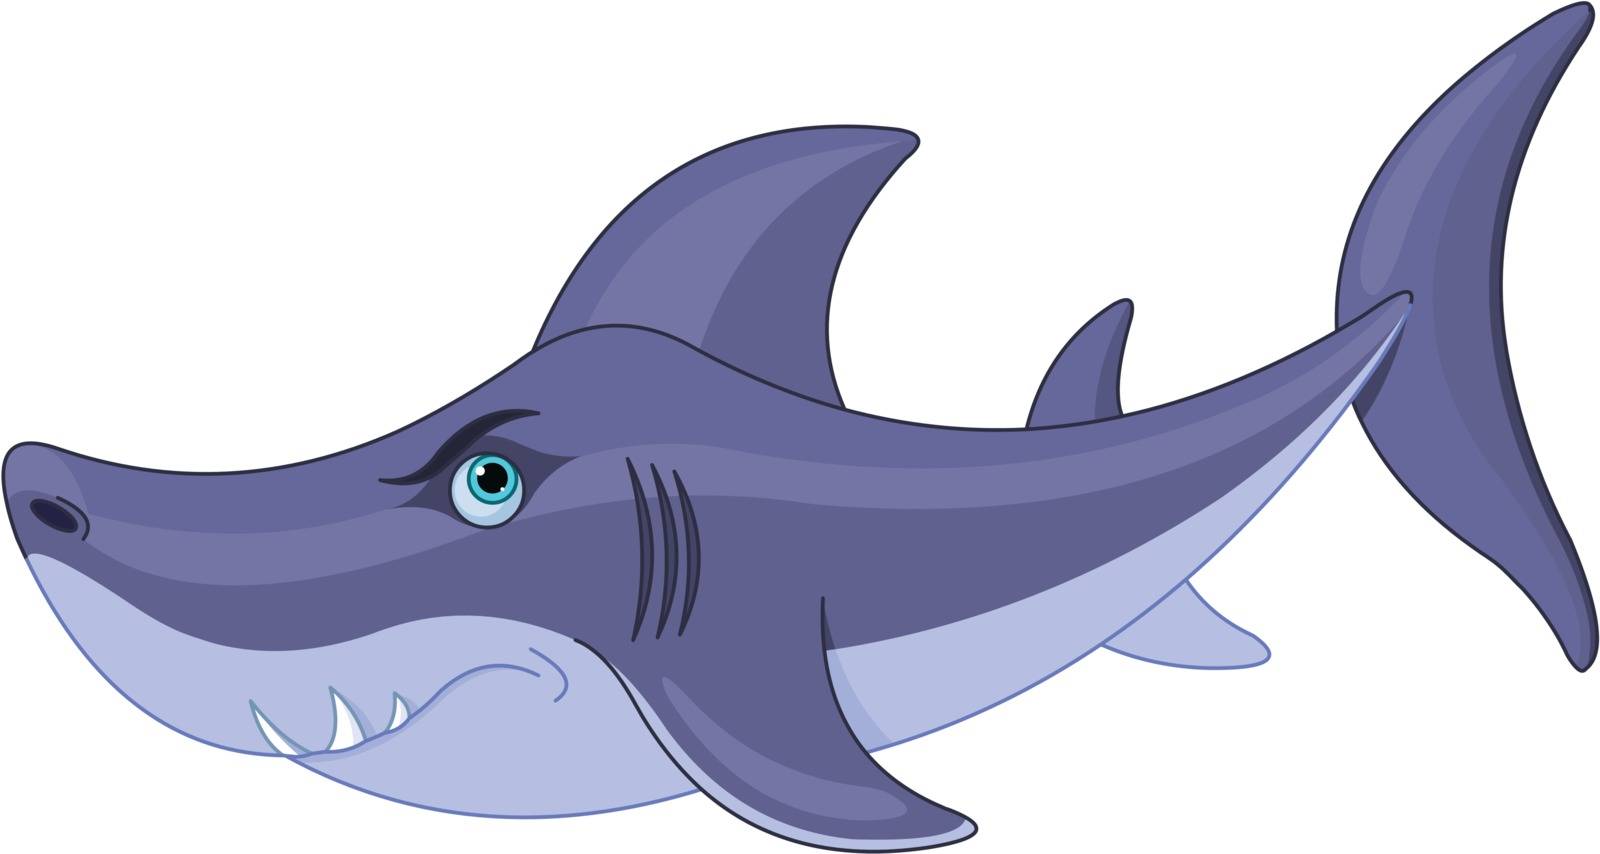 Illustration of cute cartoon shark